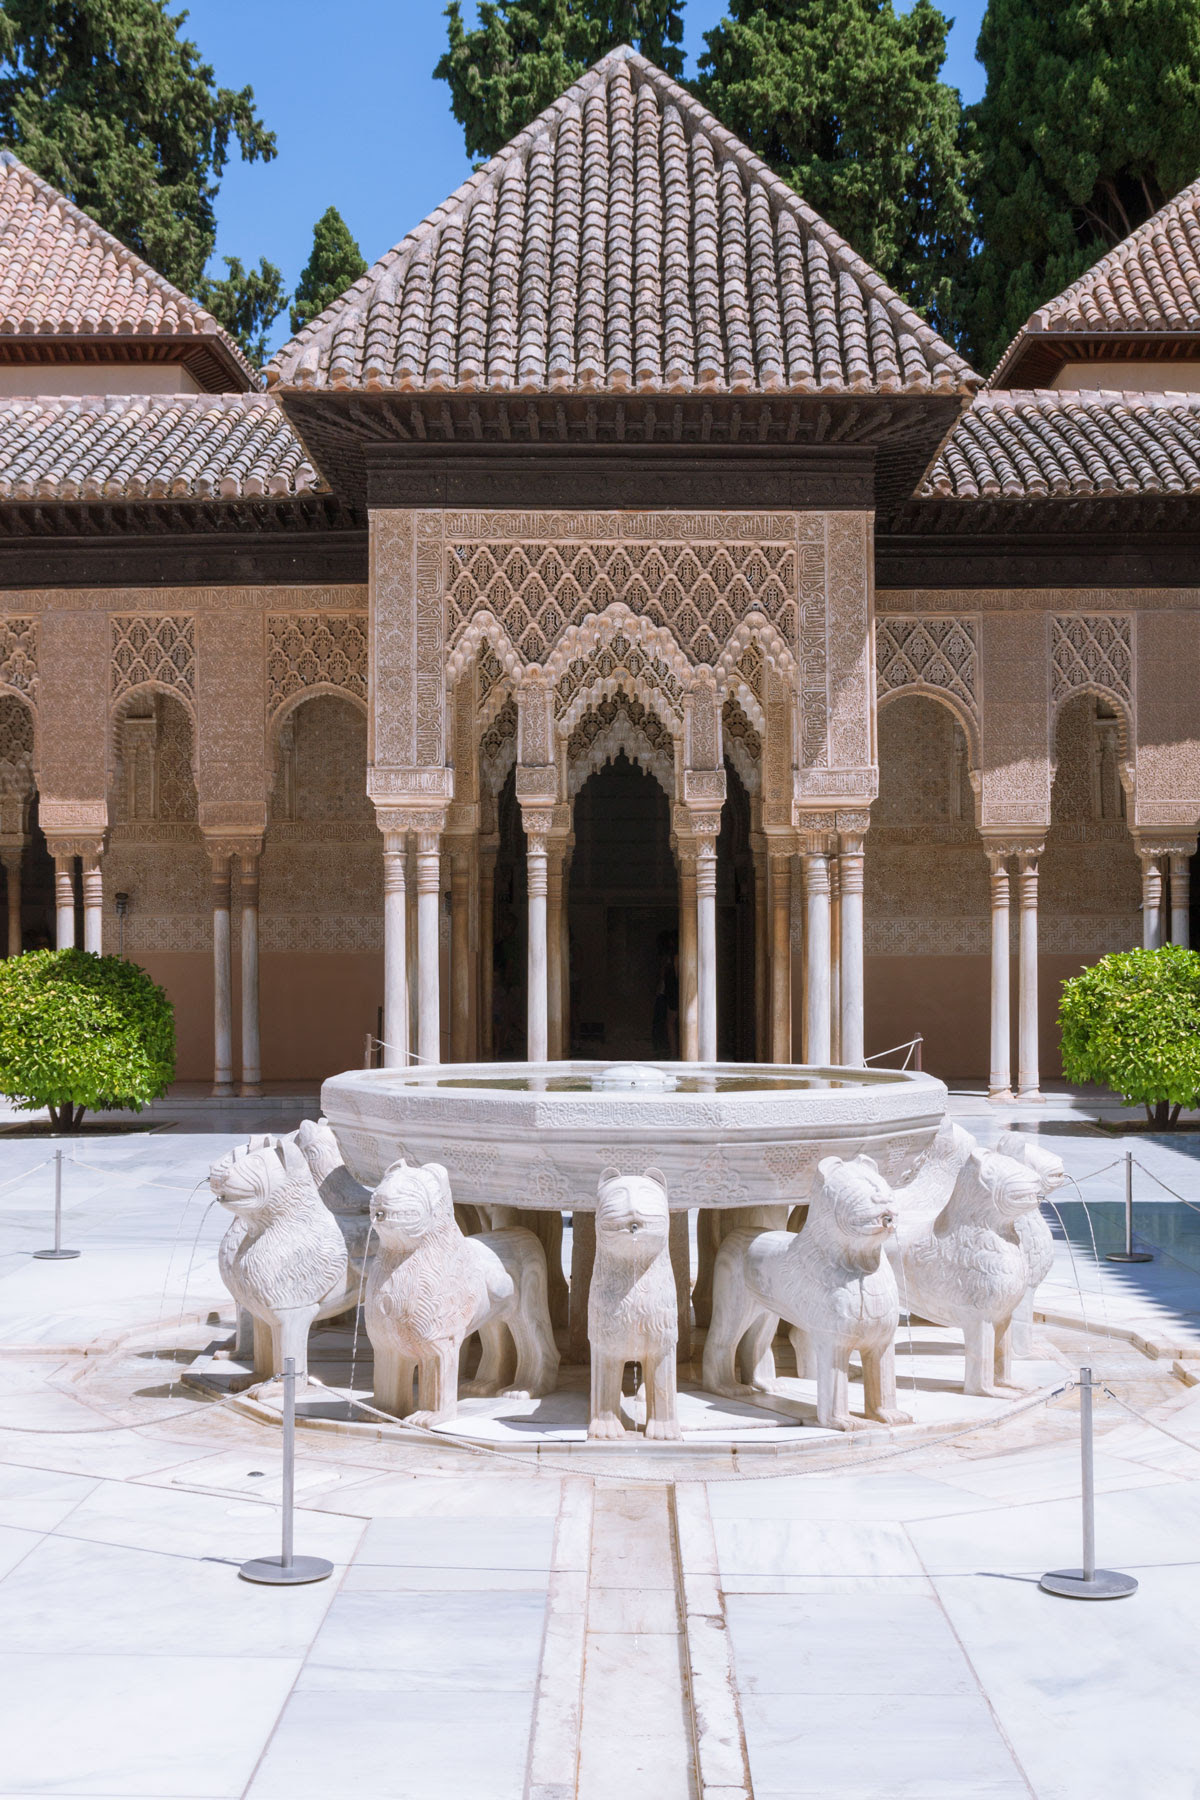 Fountain in Patio de los Leones Alhambra